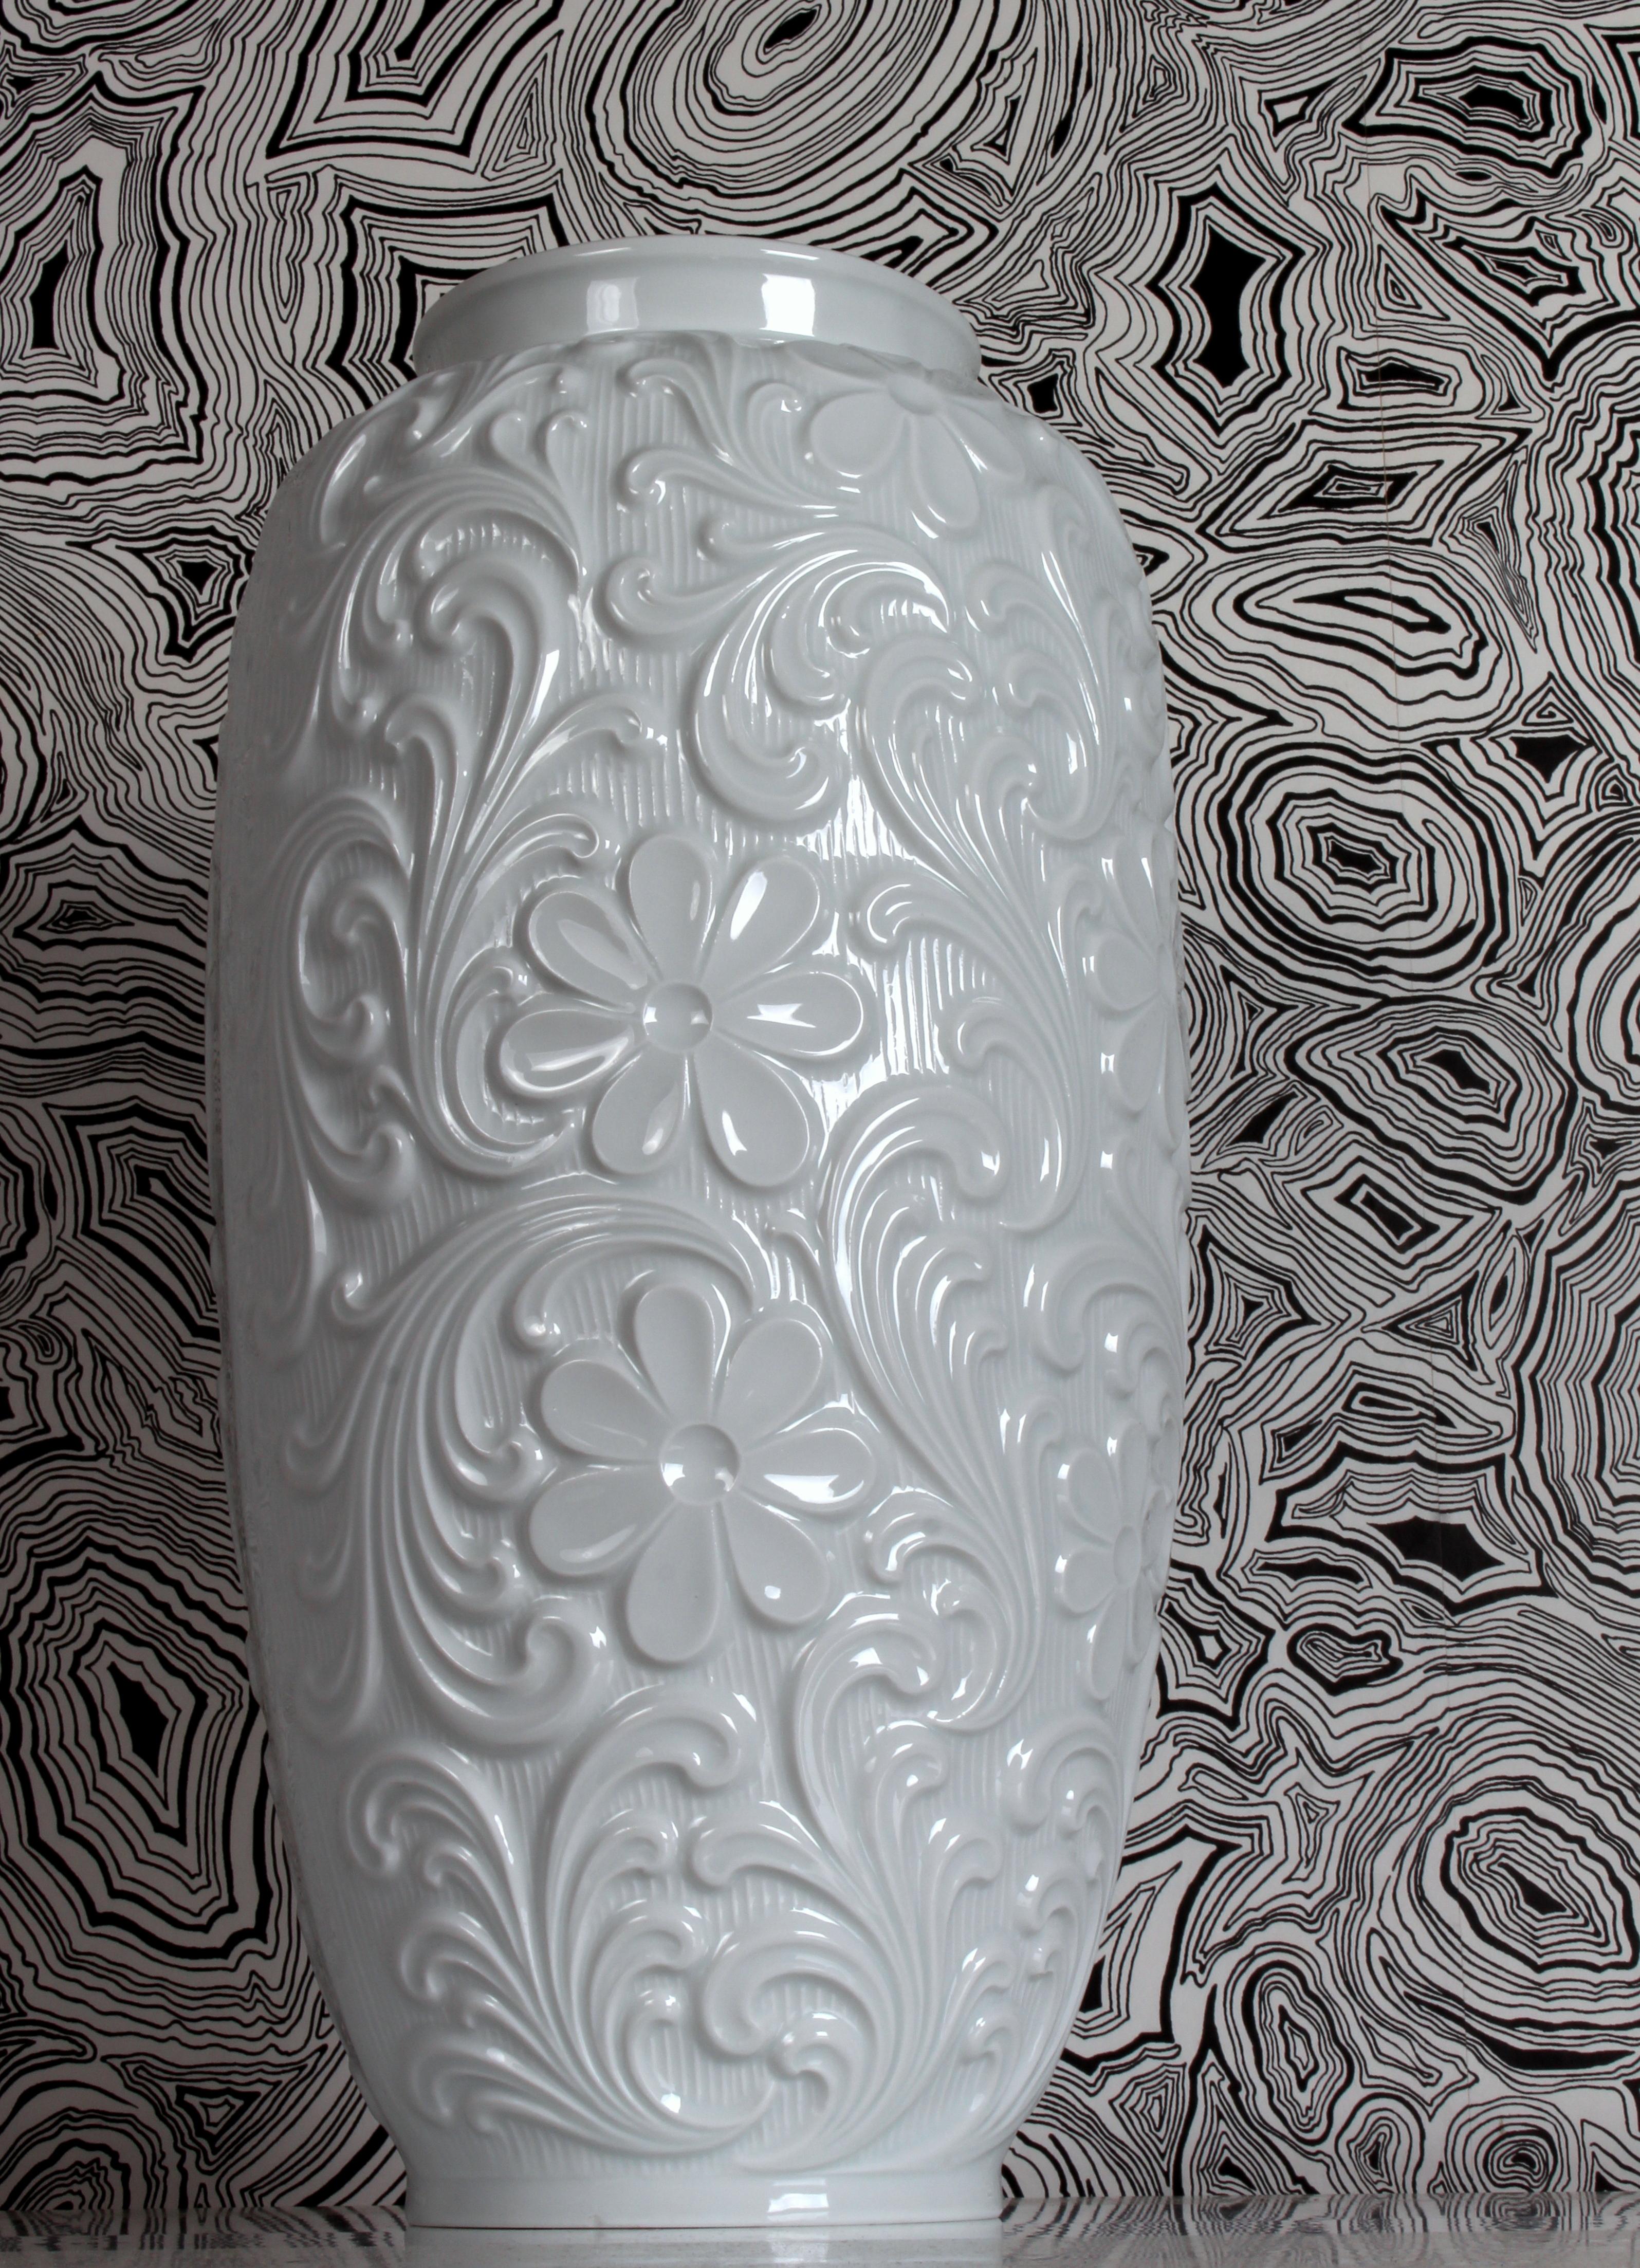 German Midcentury Porcelain Floral / Paisley Floor Vase Retsch & Co Wunsiedel Bavaria